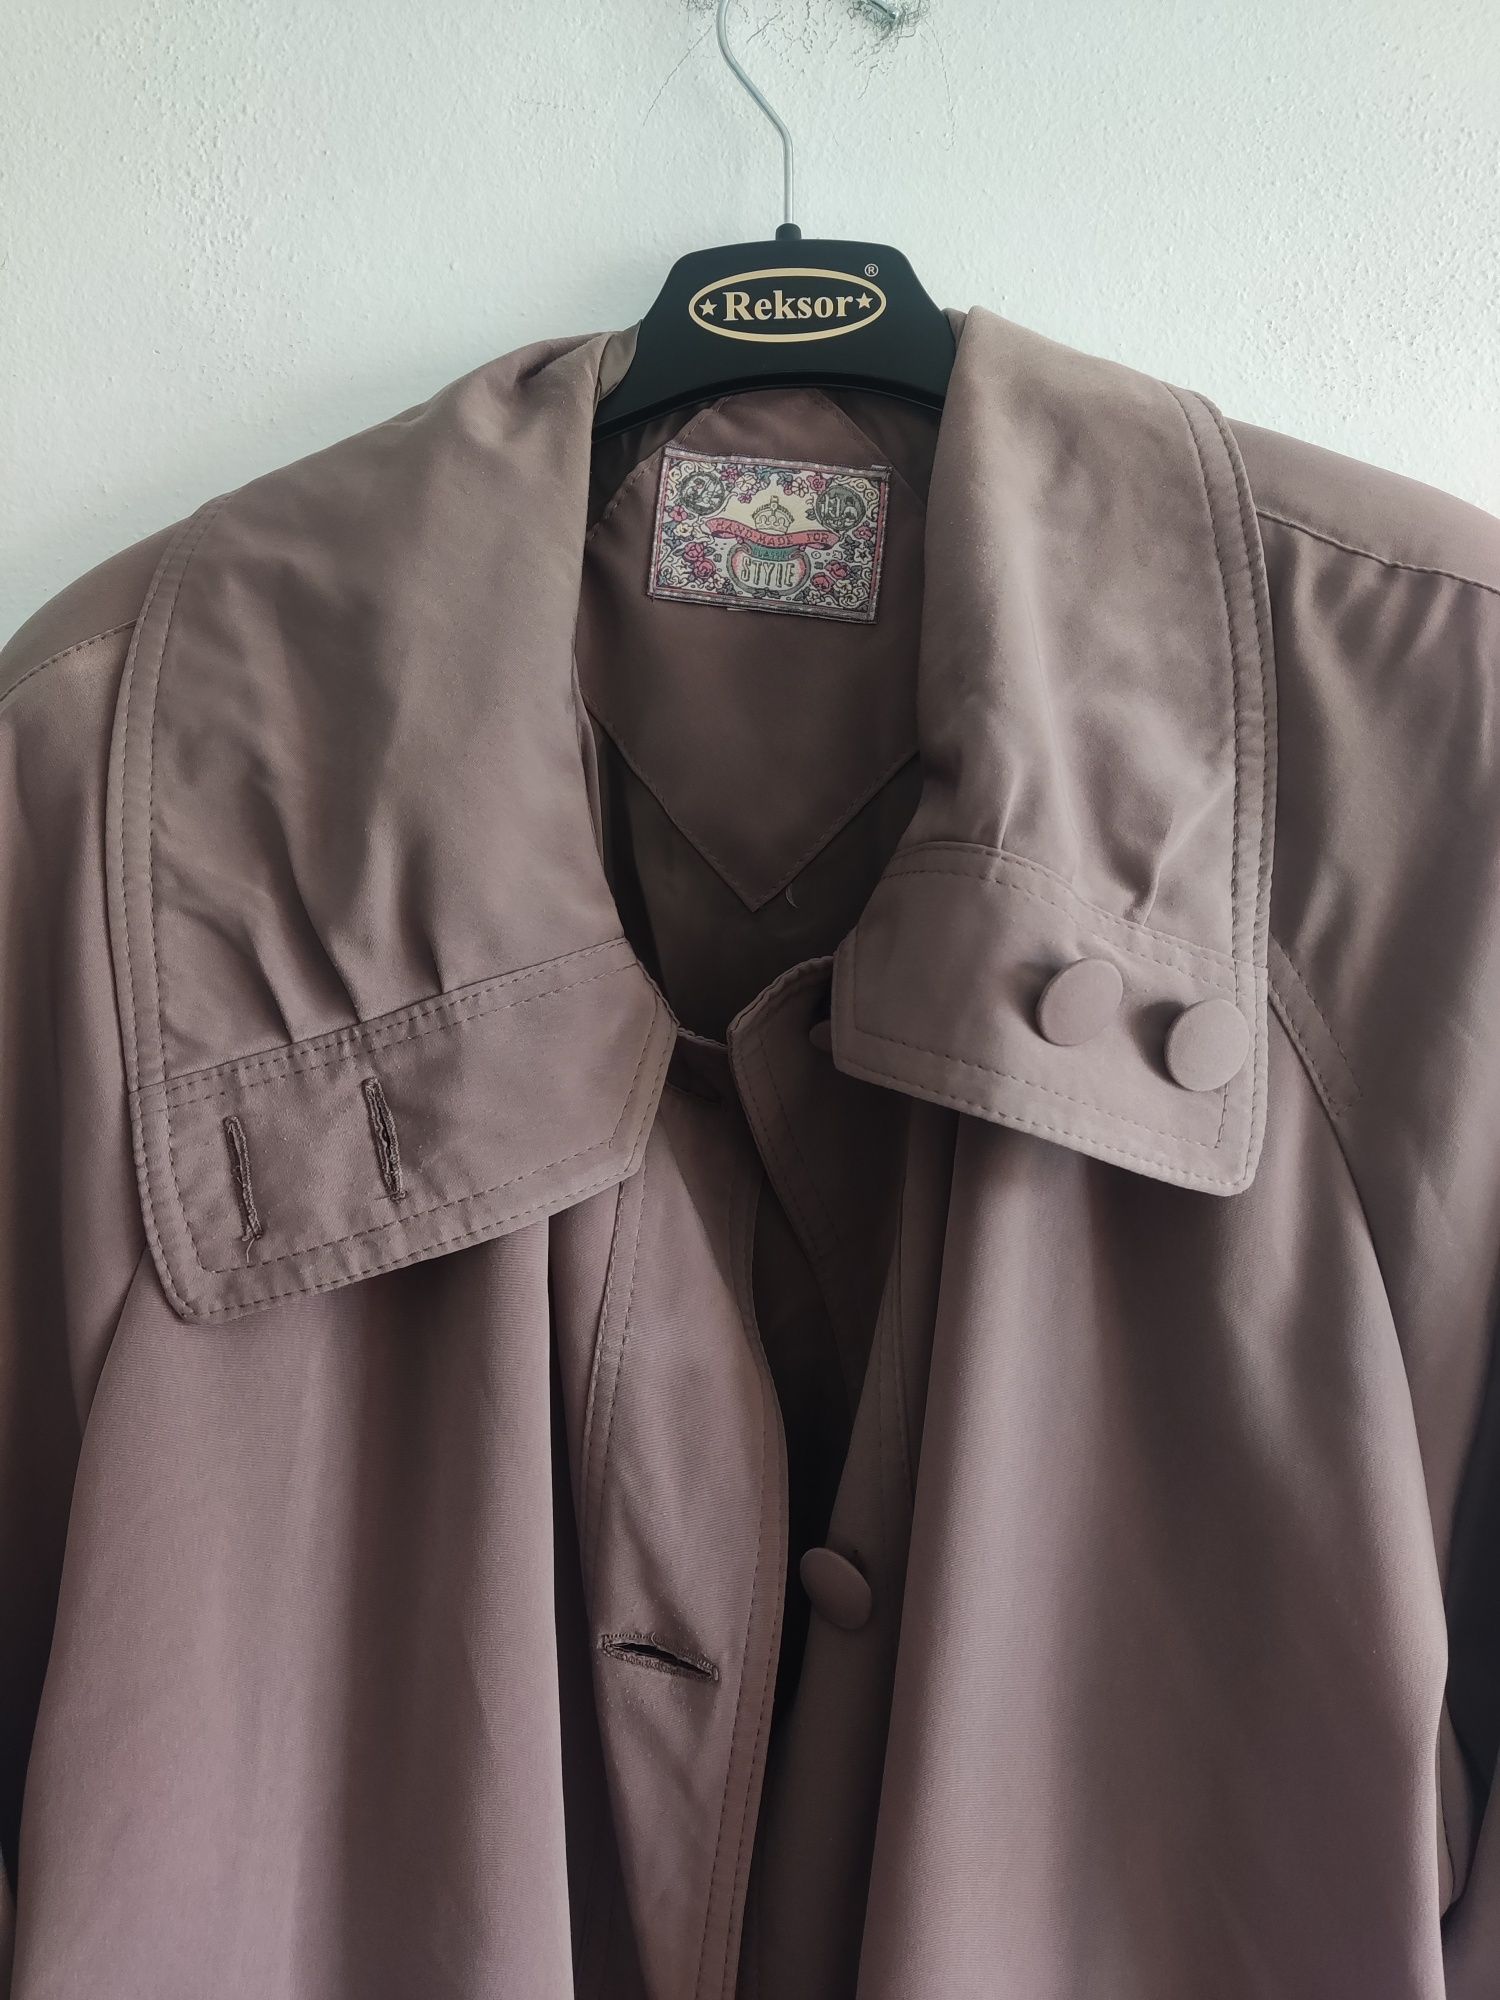 Wiosenny płaszcz, trencz, vintage, z pelerynką - r. 44